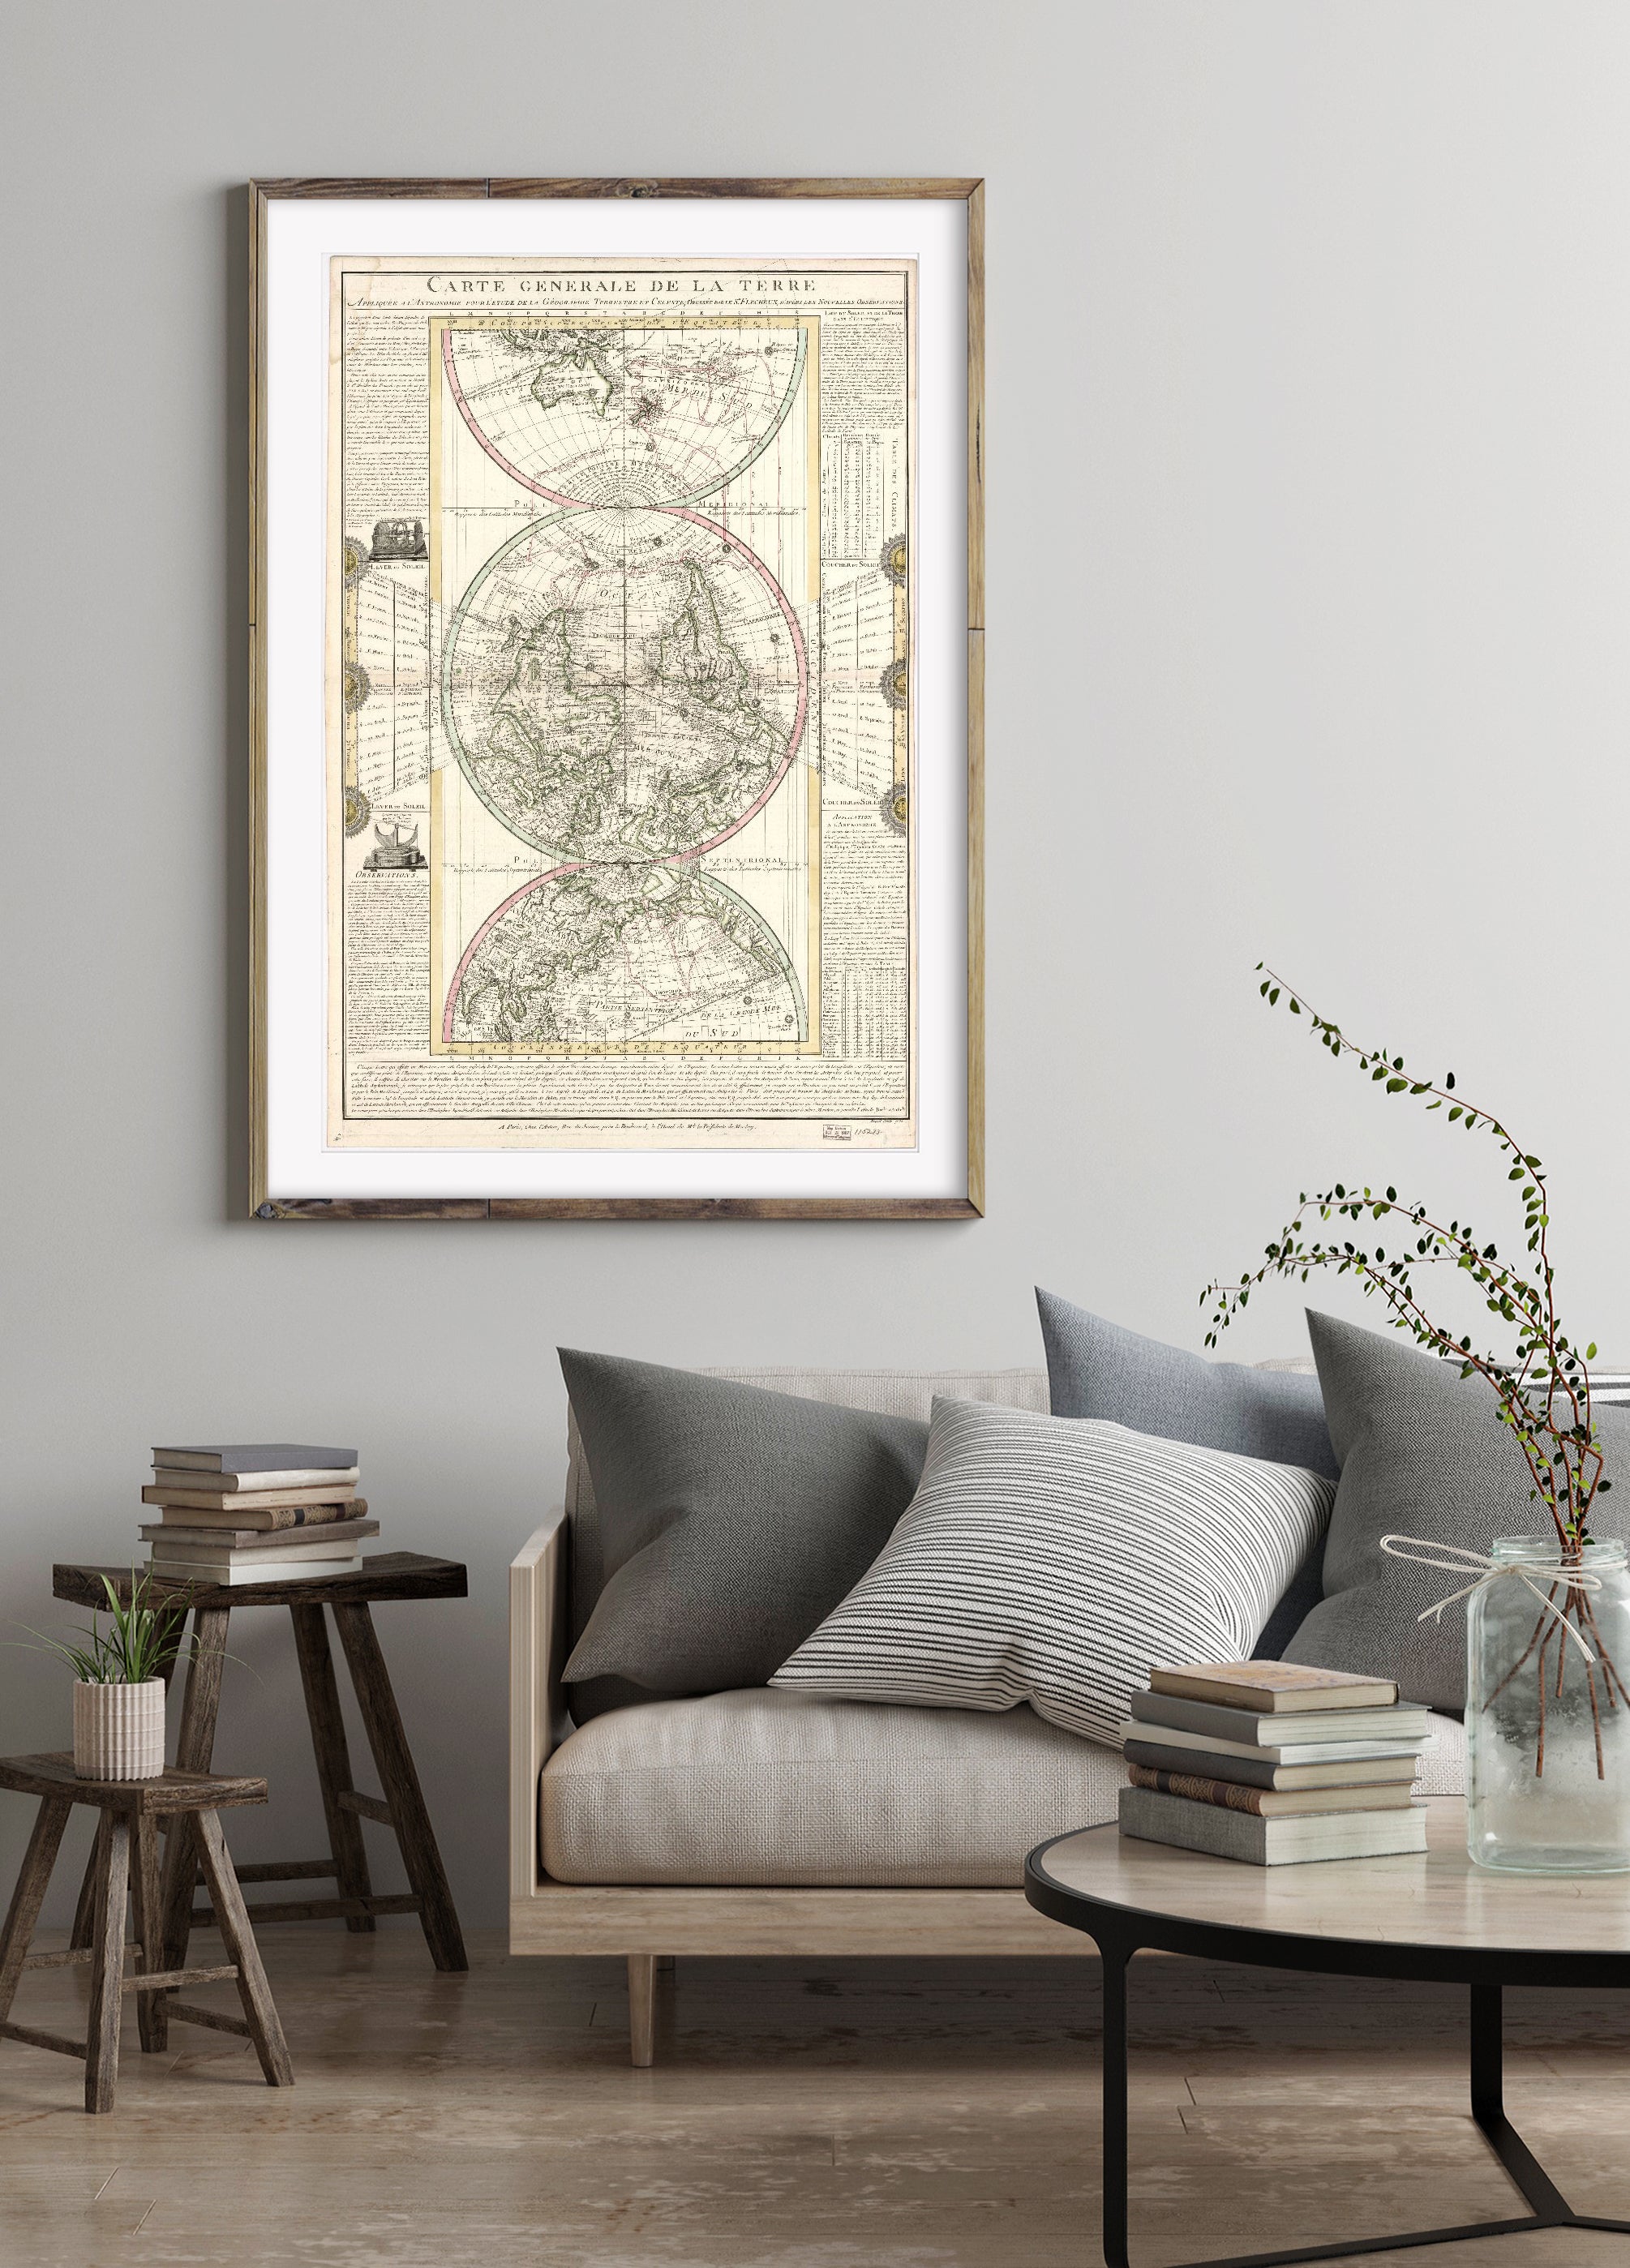 1782 Map | Discoveries in Geography | Earth | North America | World Maps | Carte generale de la terre: appliquee a l'astronomie pour l'etude de la geographie terrestre et celeste